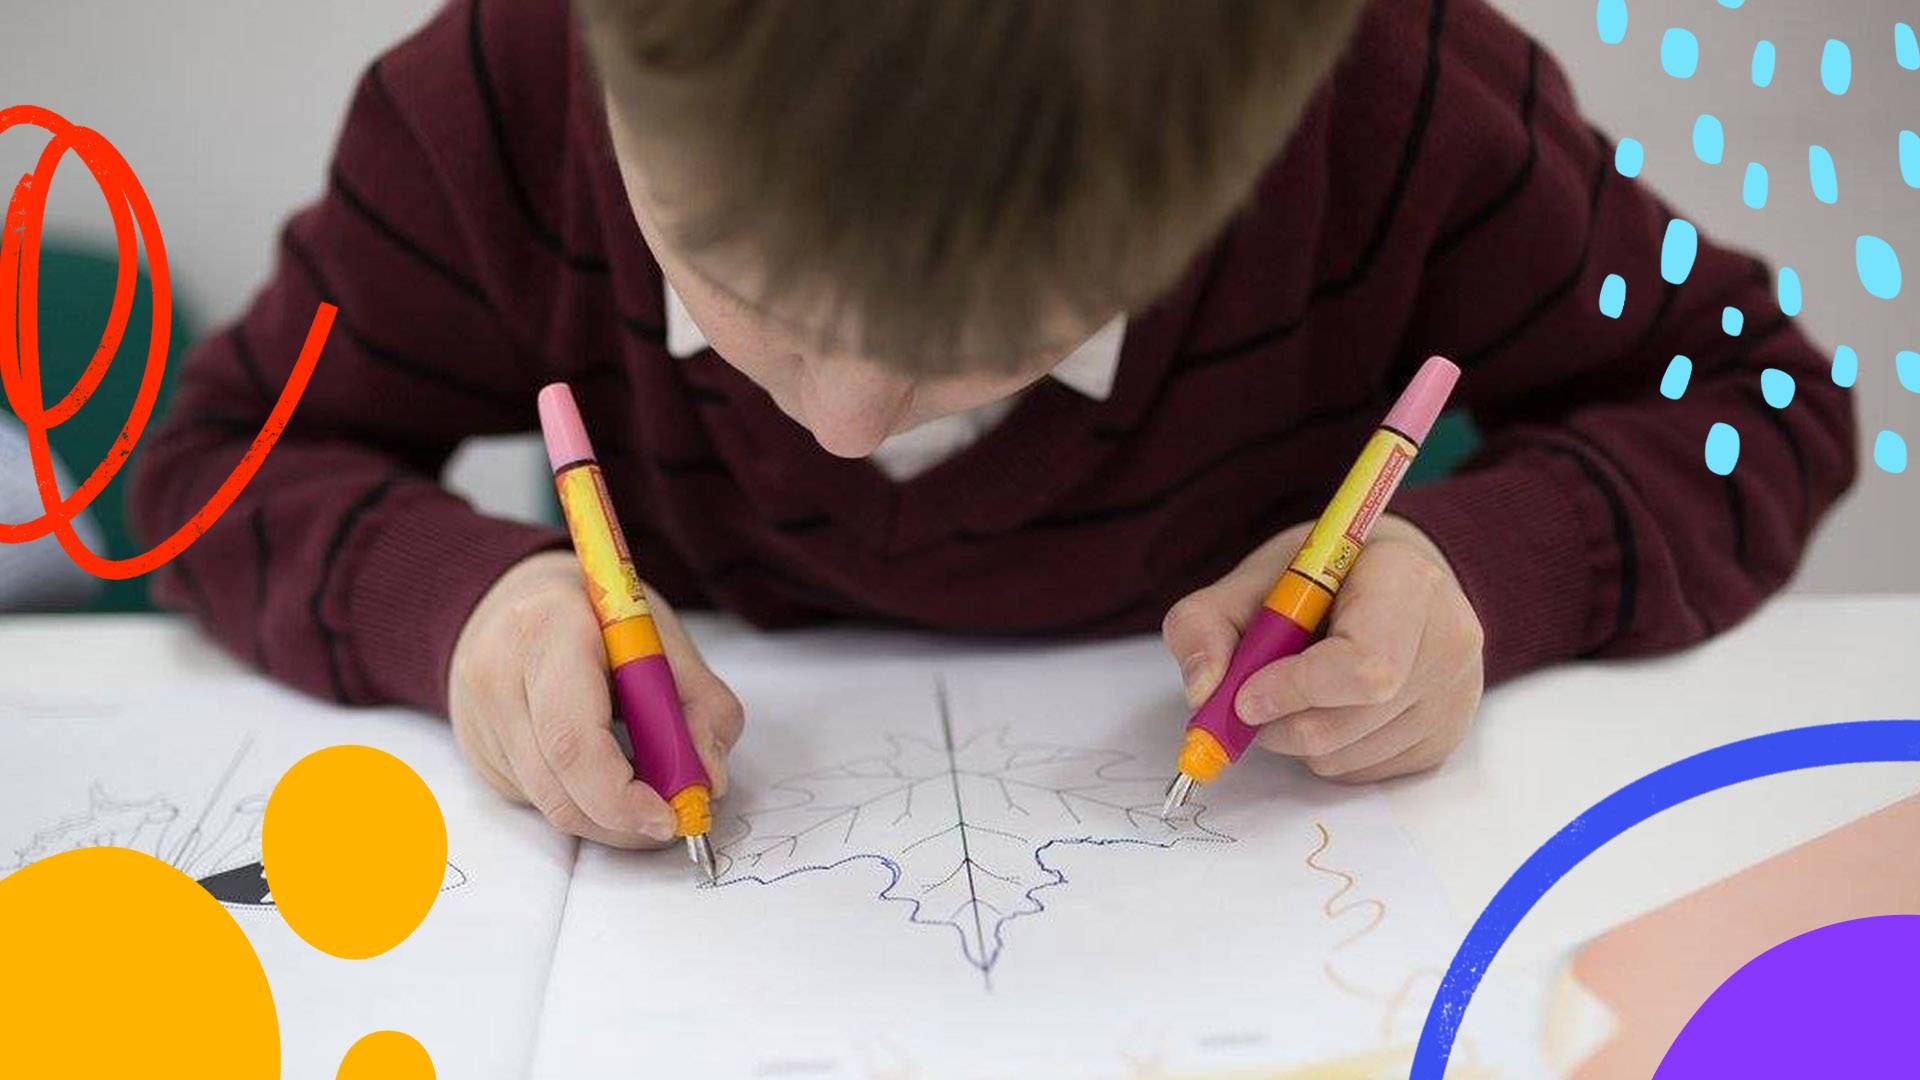 Нужно ли учить ребенка рисовать? какие условия способствуют творческому развитию, а какие приводят к отказу?